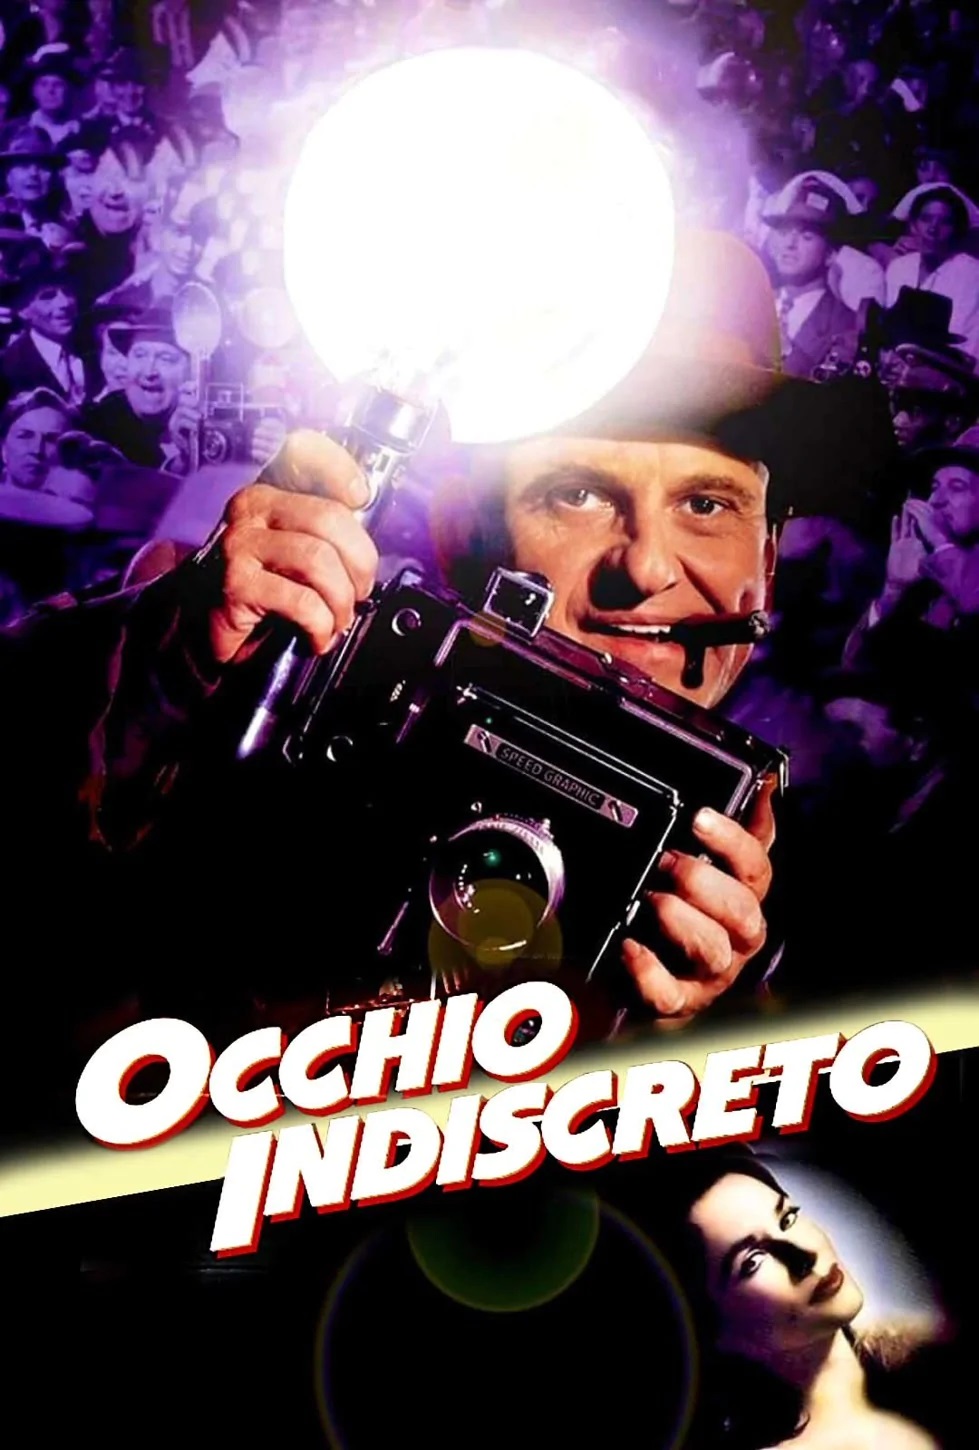 Occhio indiscreto [HD] (1992)